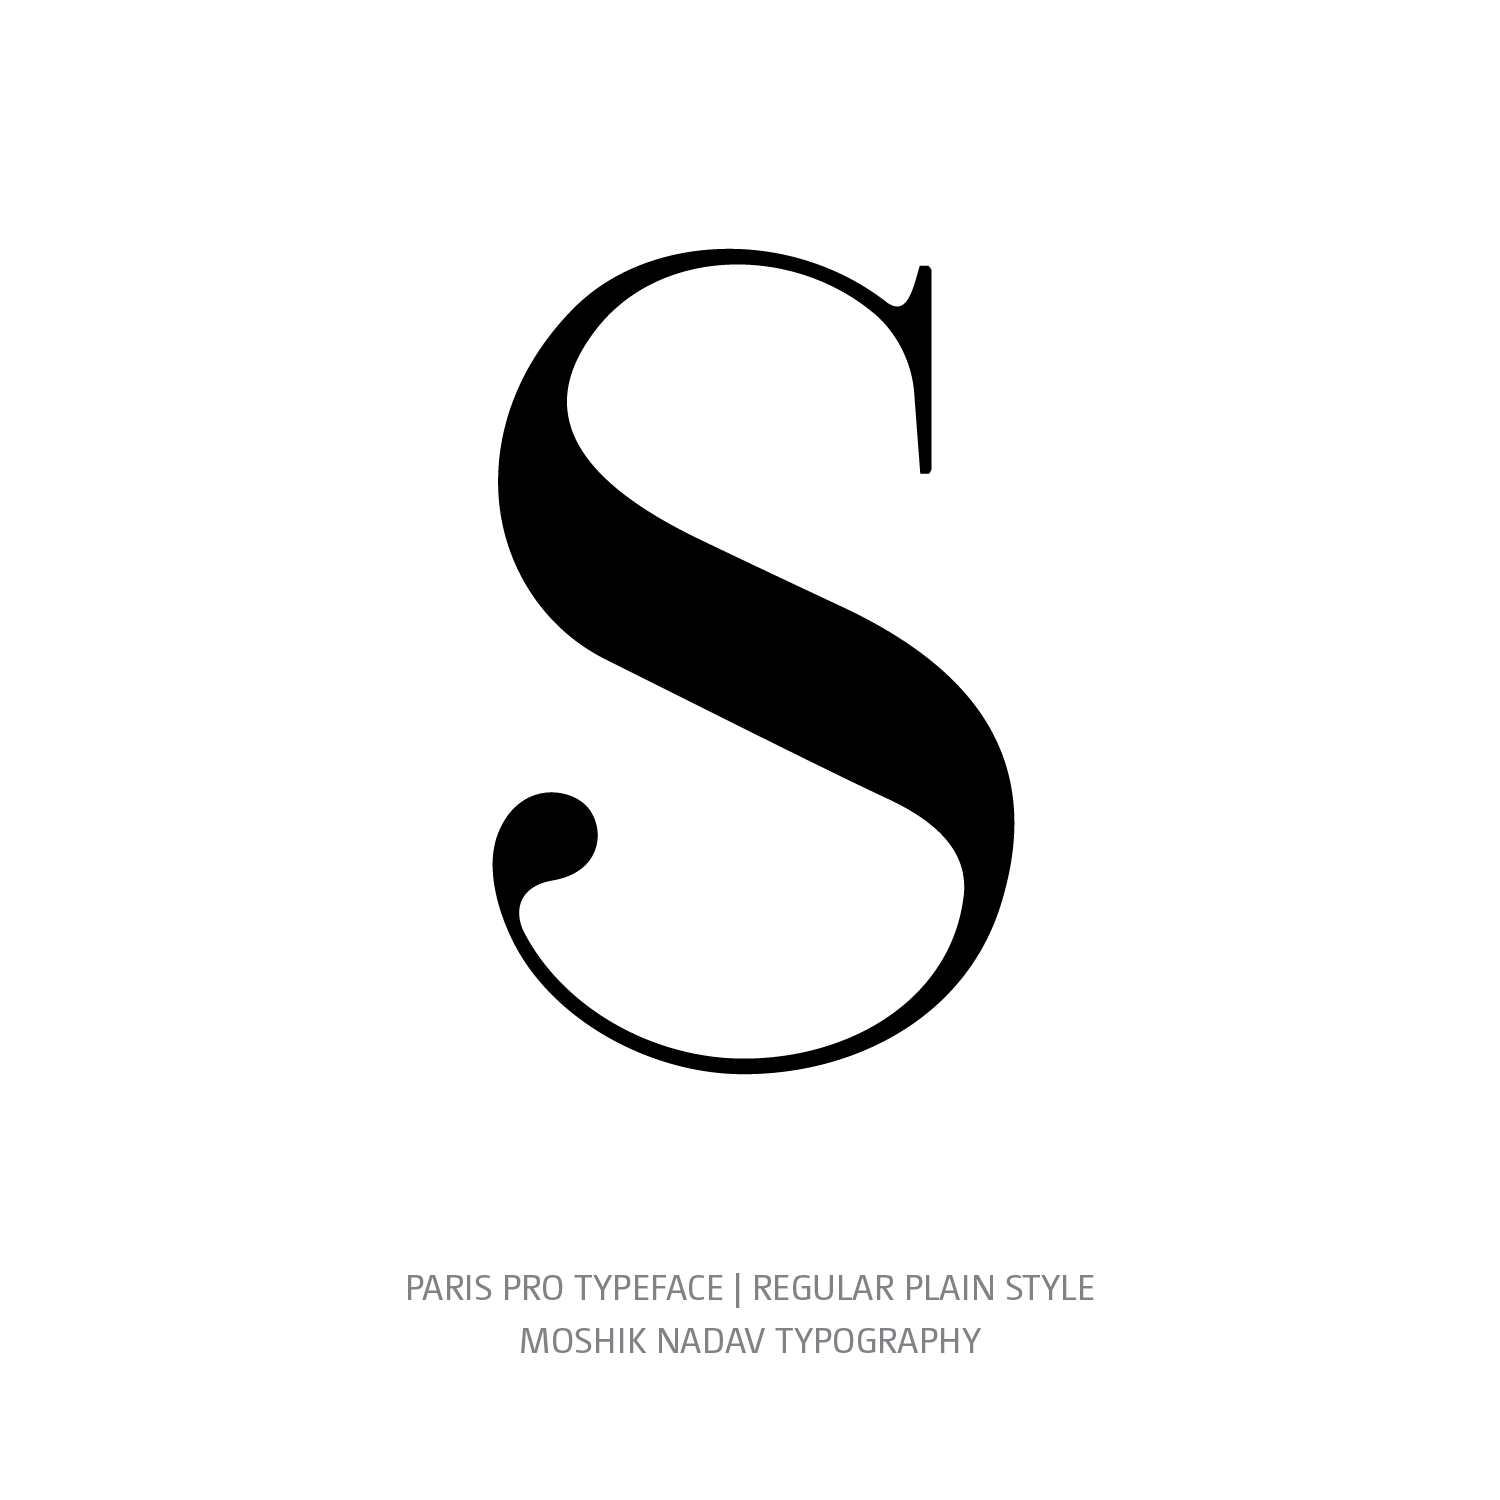 Paris Pro Typeface Regular Plain S